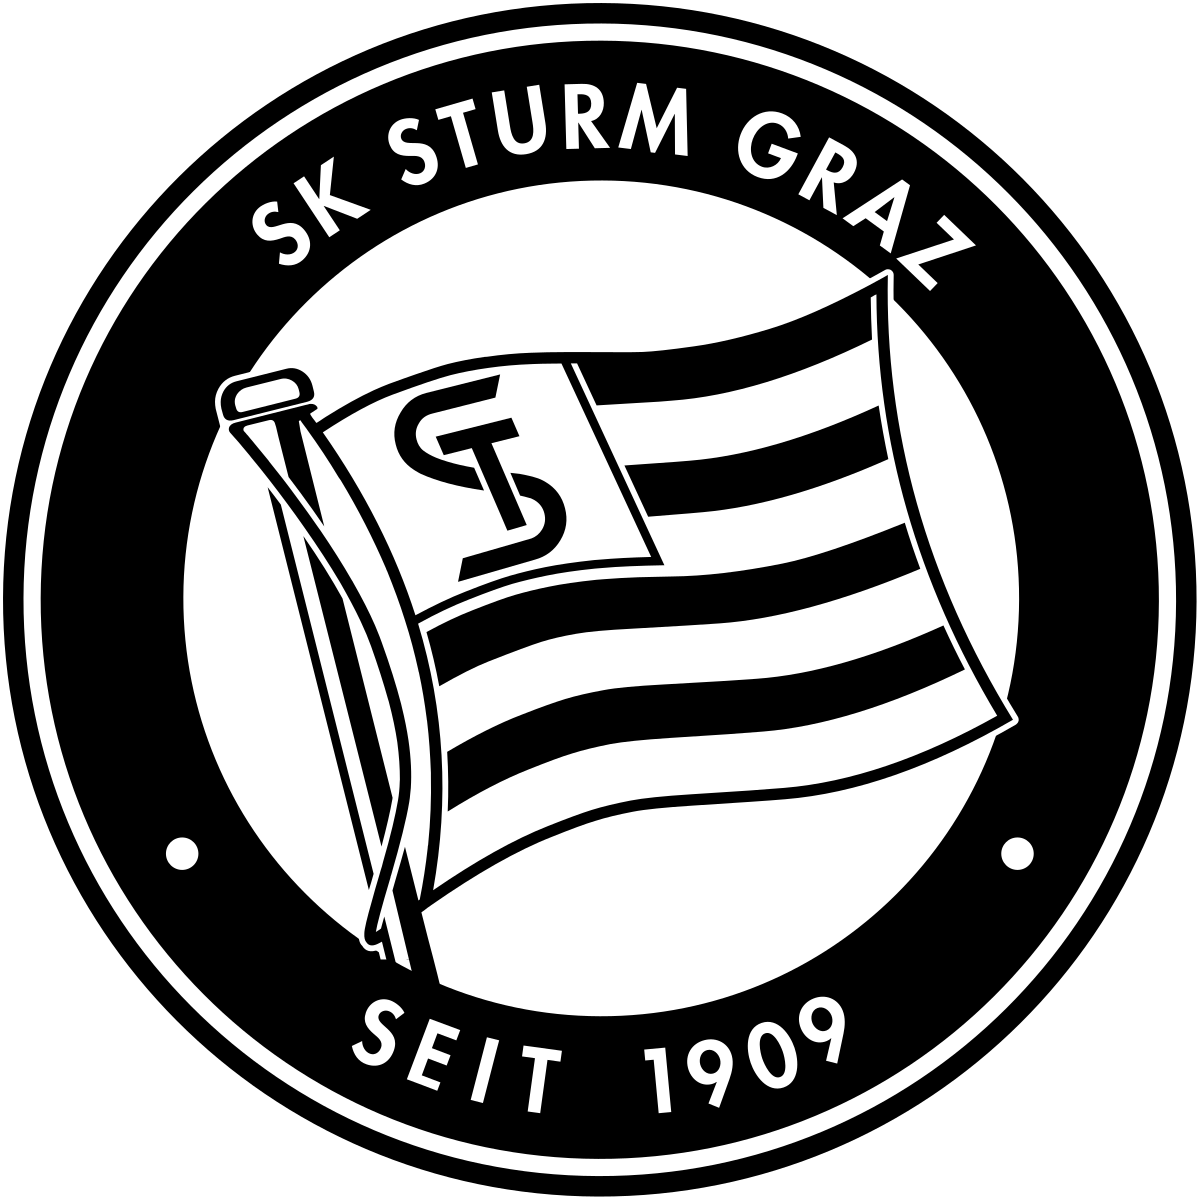 Sturm Graz/Stattegg (W)